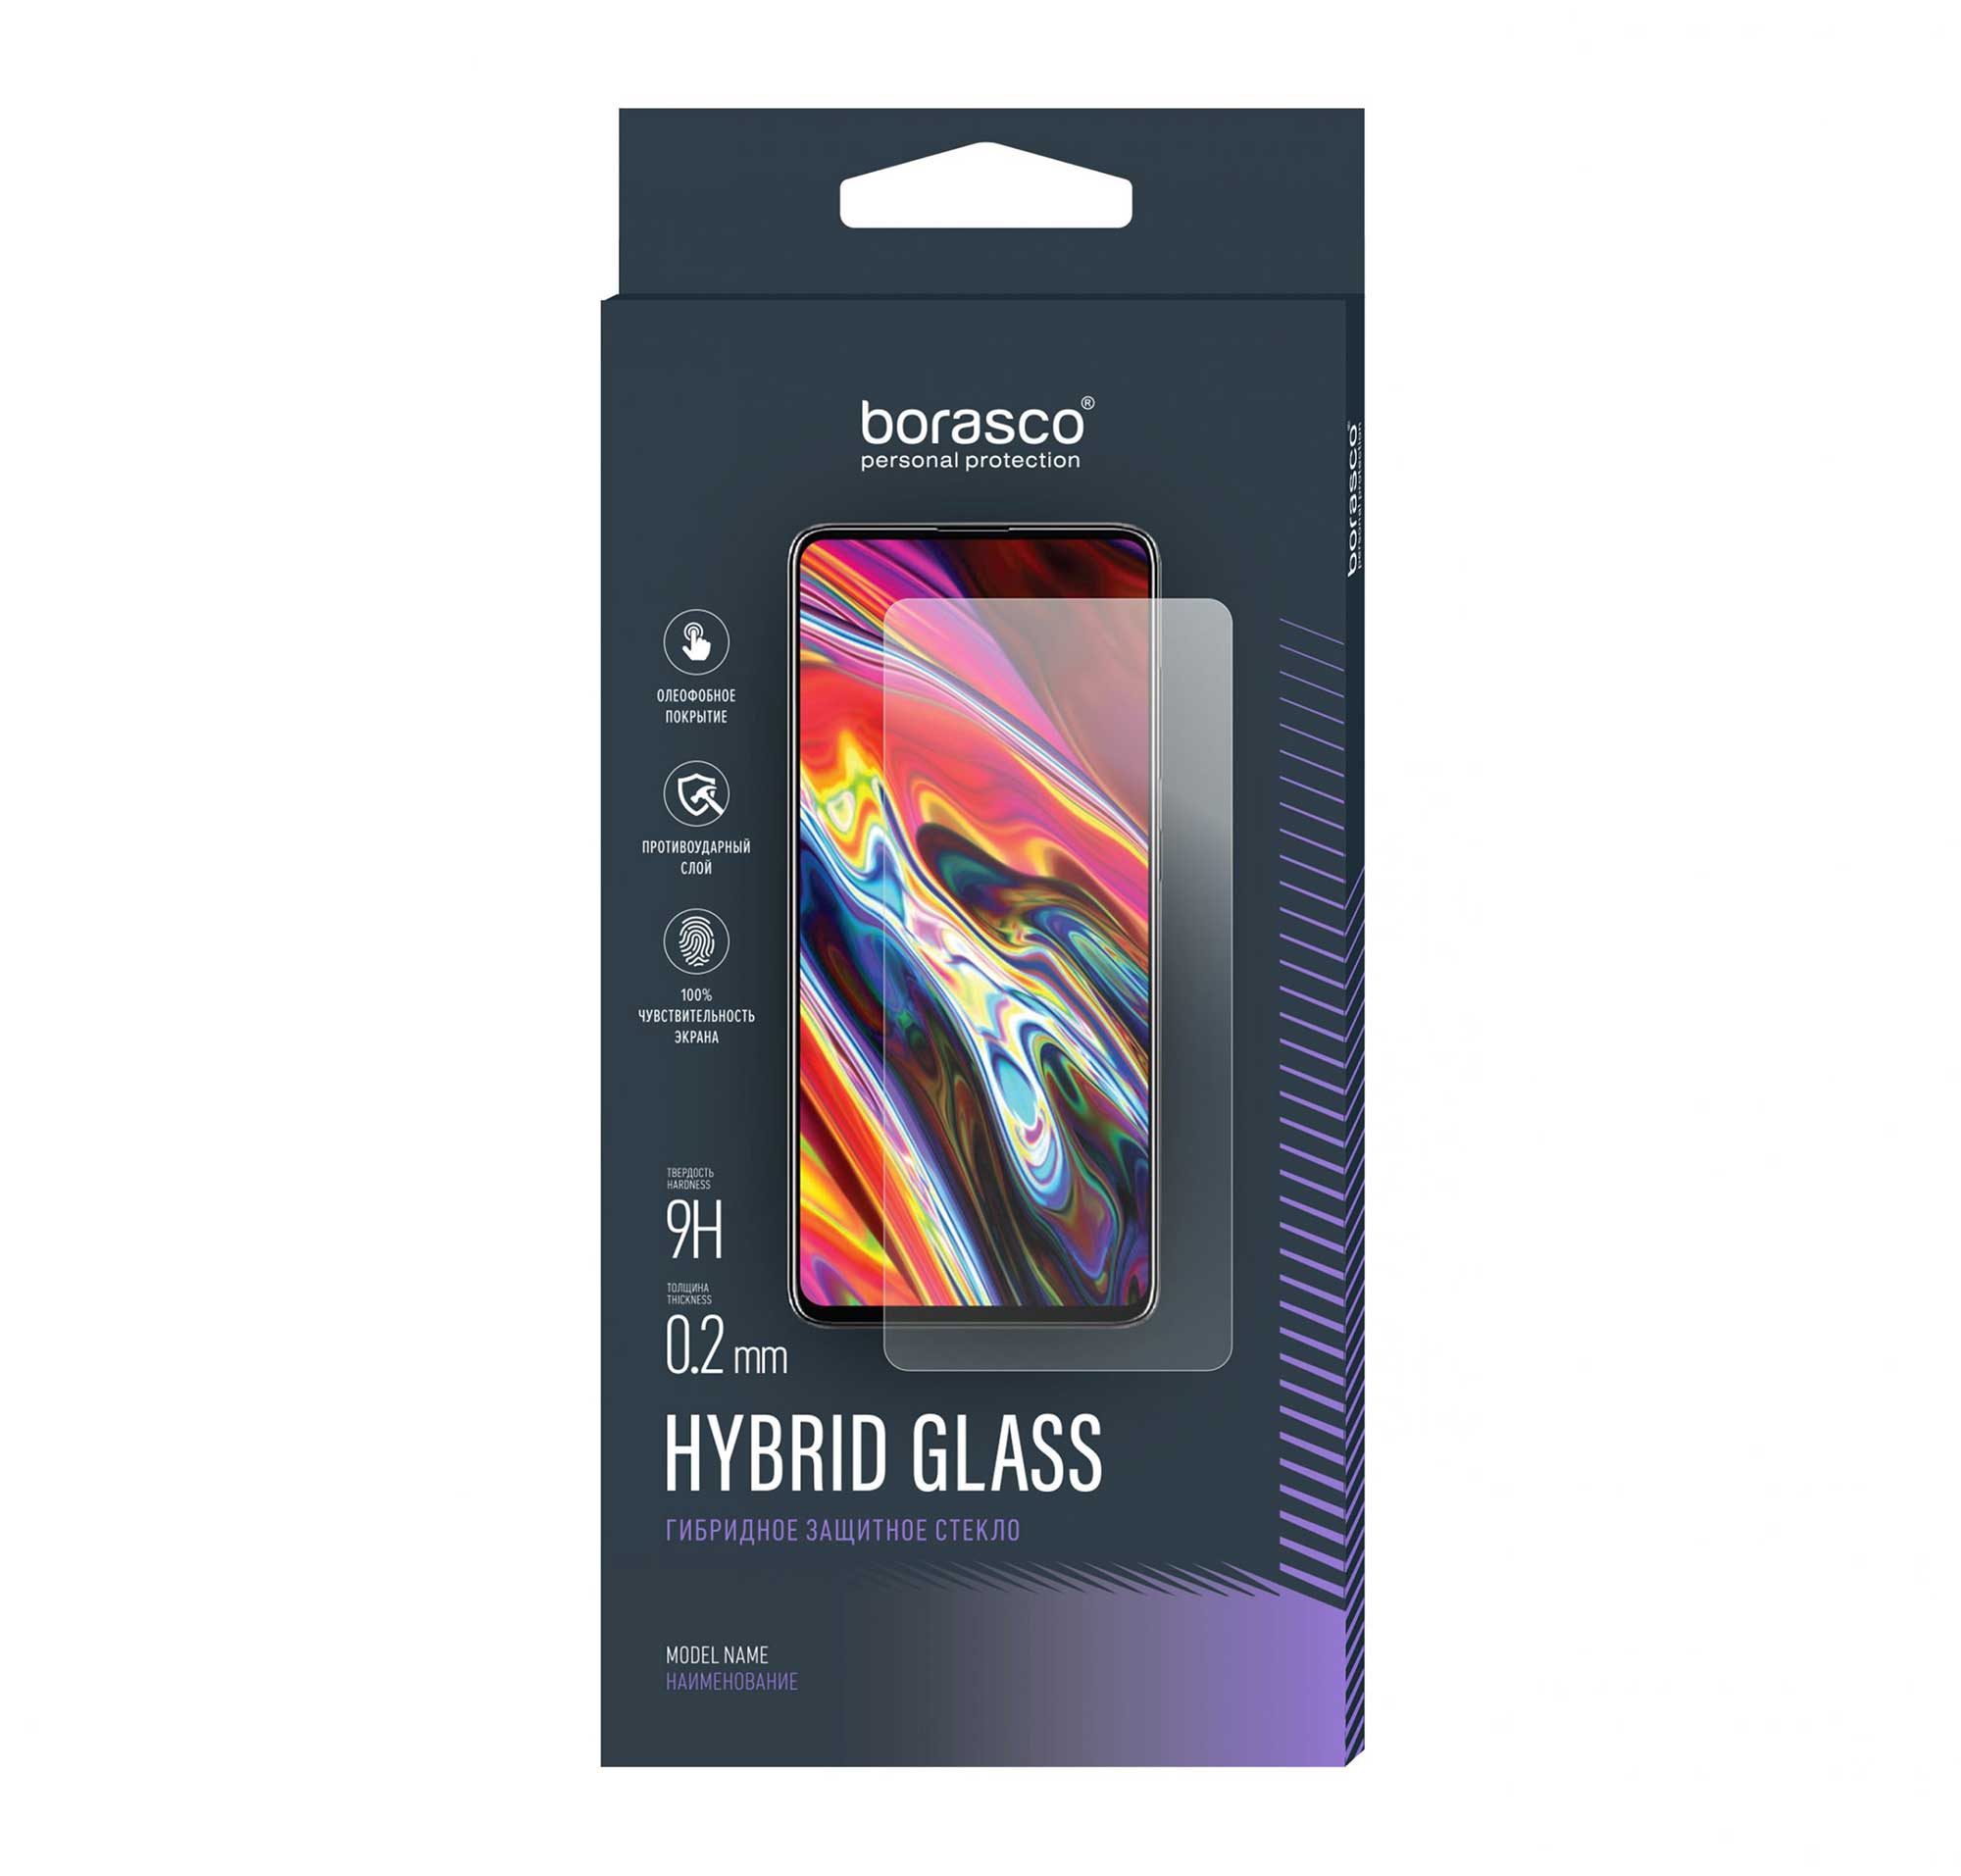 Защитное стекло BoraSCO Hybrid Glass для Nokia G21 чехол mypads влюбленные барашки для nokia g21 задняя панель накладка бампер